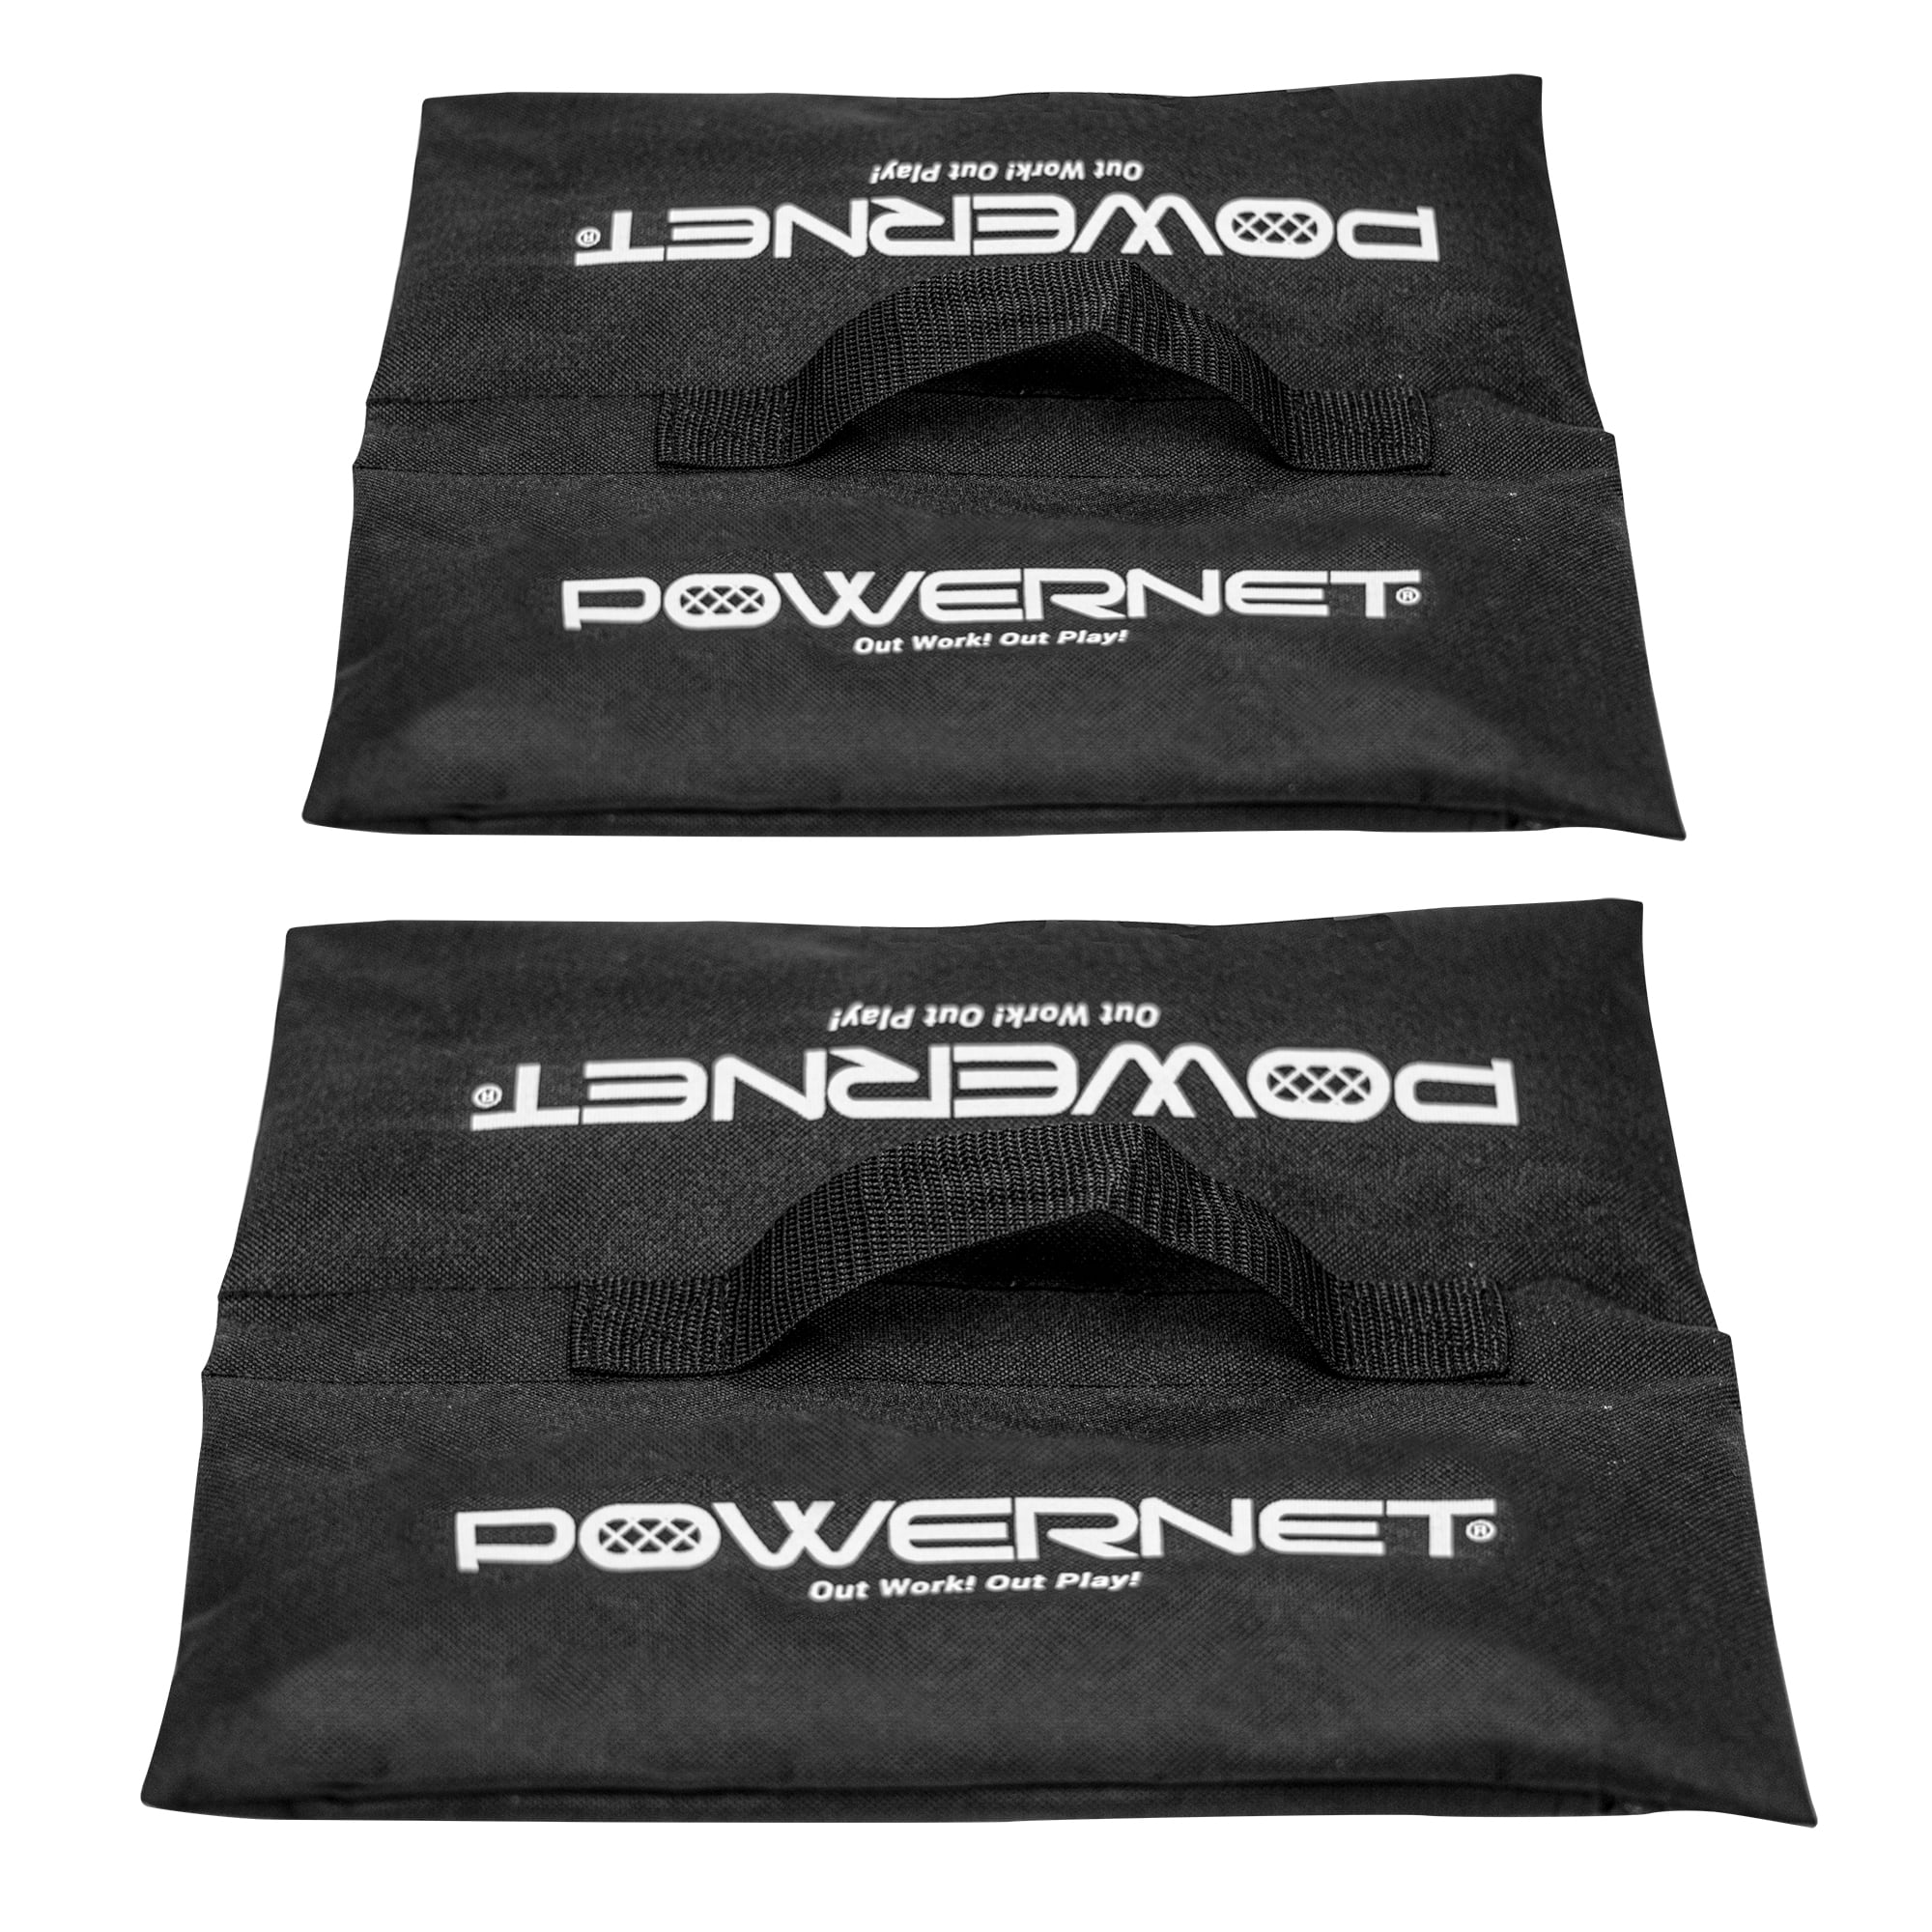 for Baseball and Softball Hitting Nets Storage 2 Pack PowerNet Sandbag Sleeves 